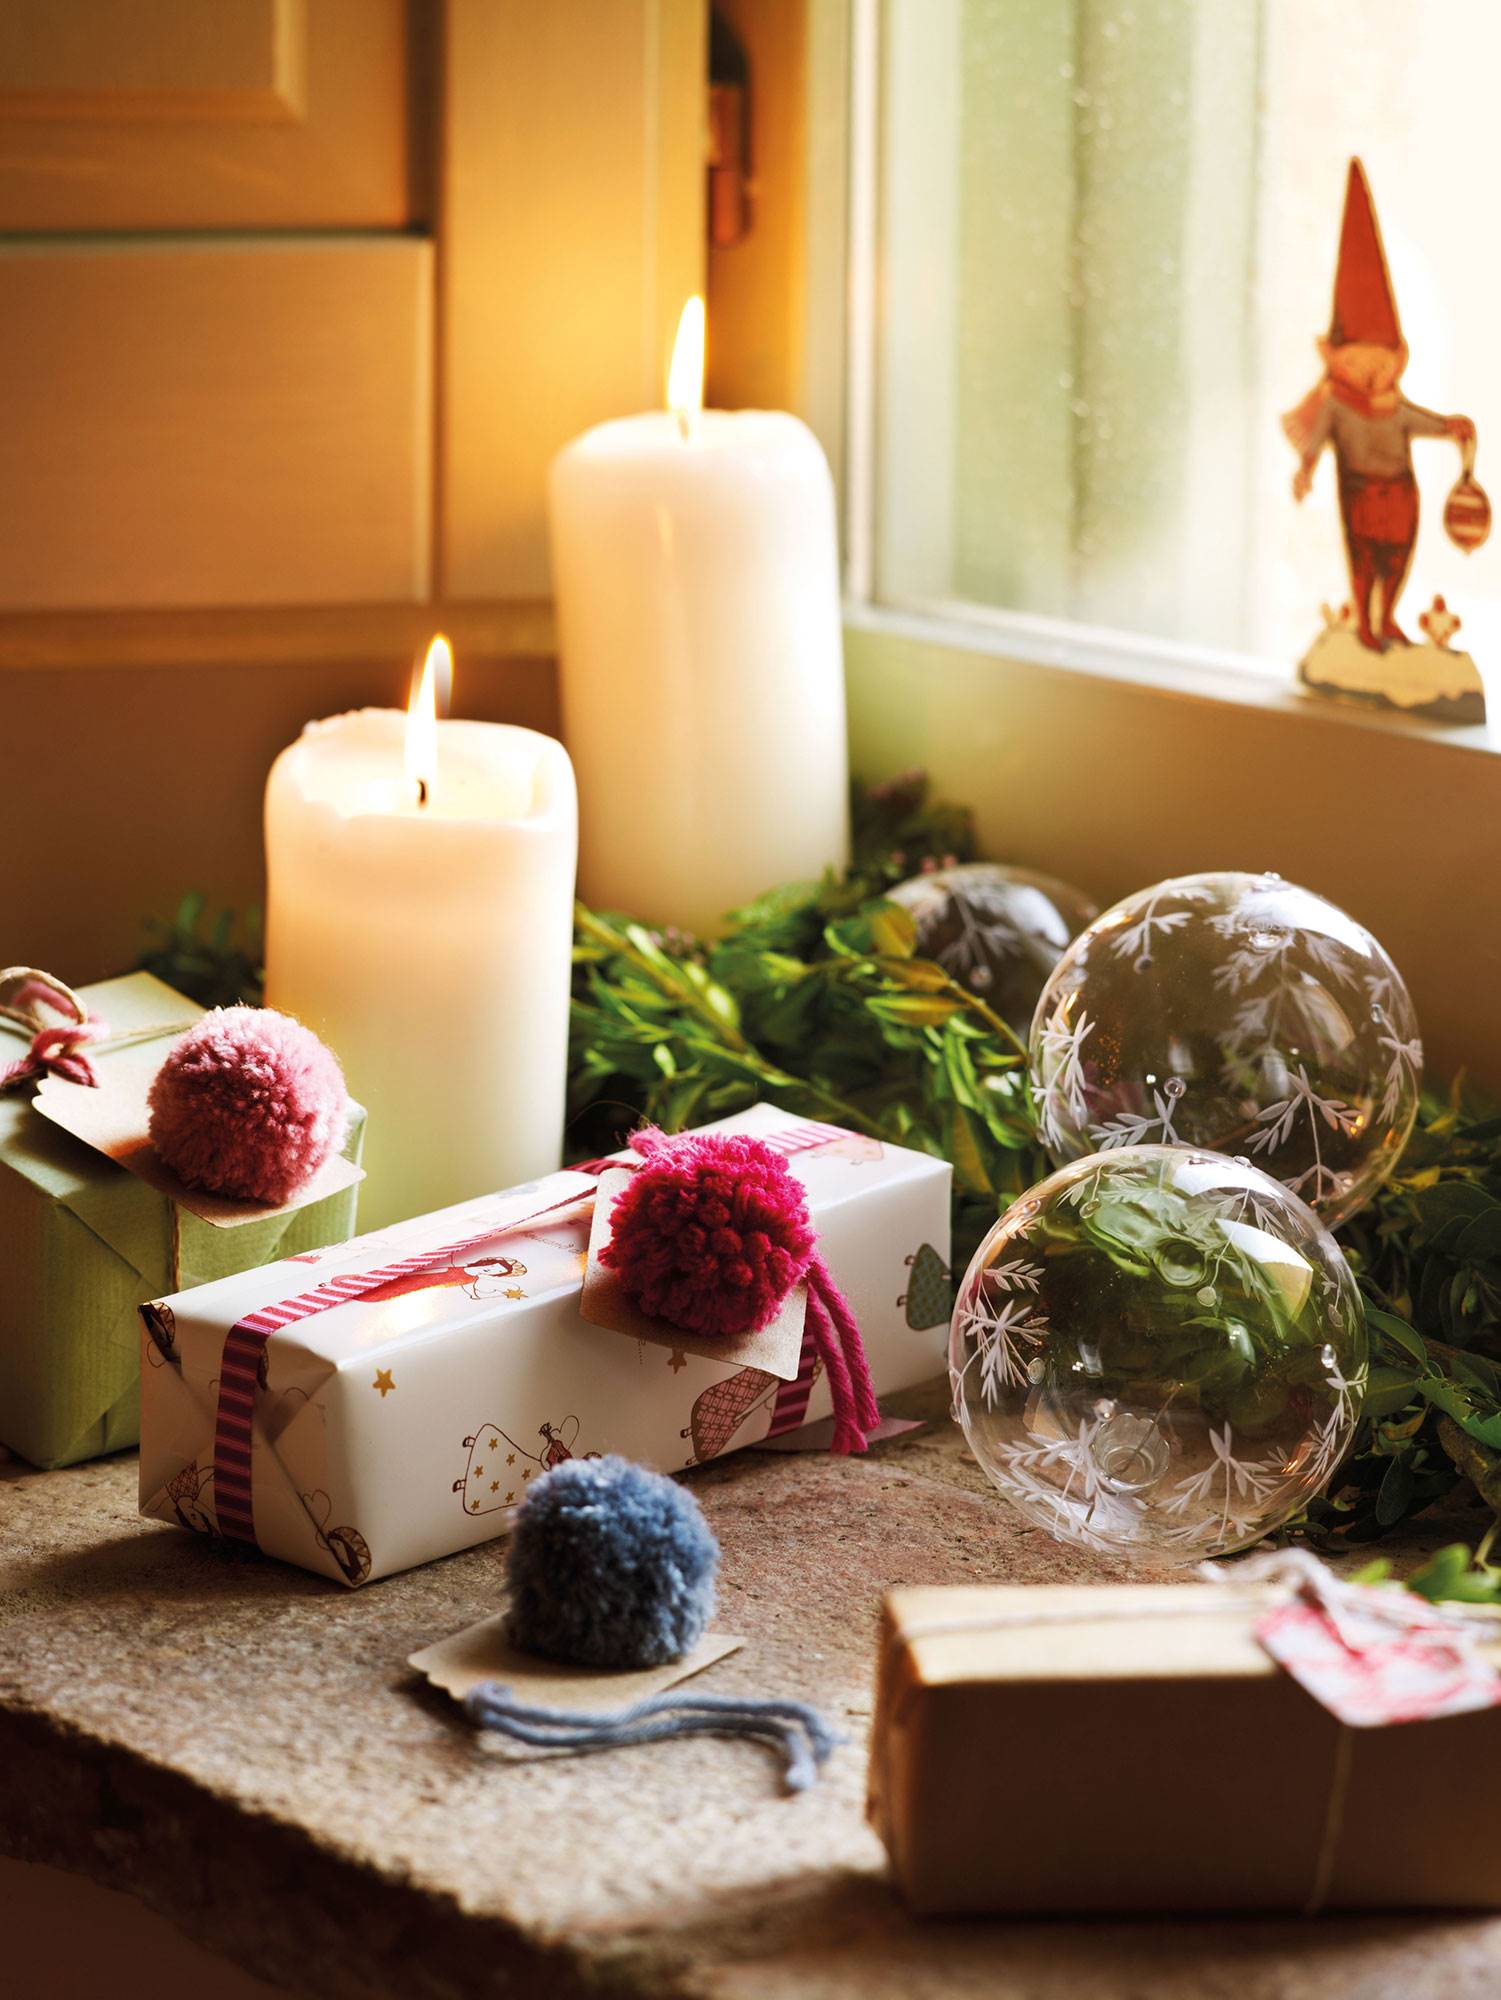 Detalle de regalos de Navidad decorados con pompones de lana